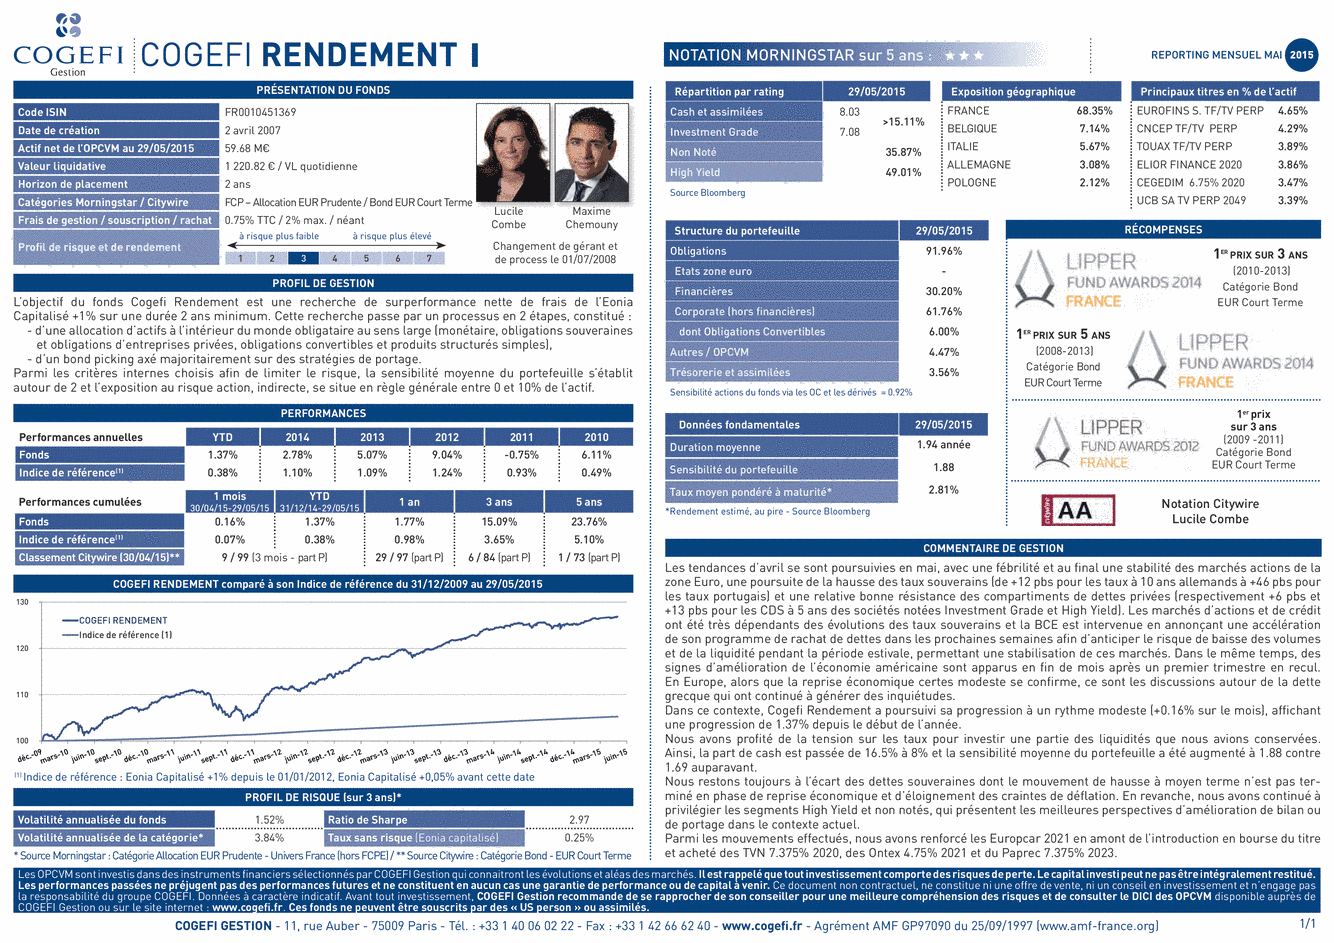 Fiche produit Cogefi Rendement I - 31/05/2015 - Français